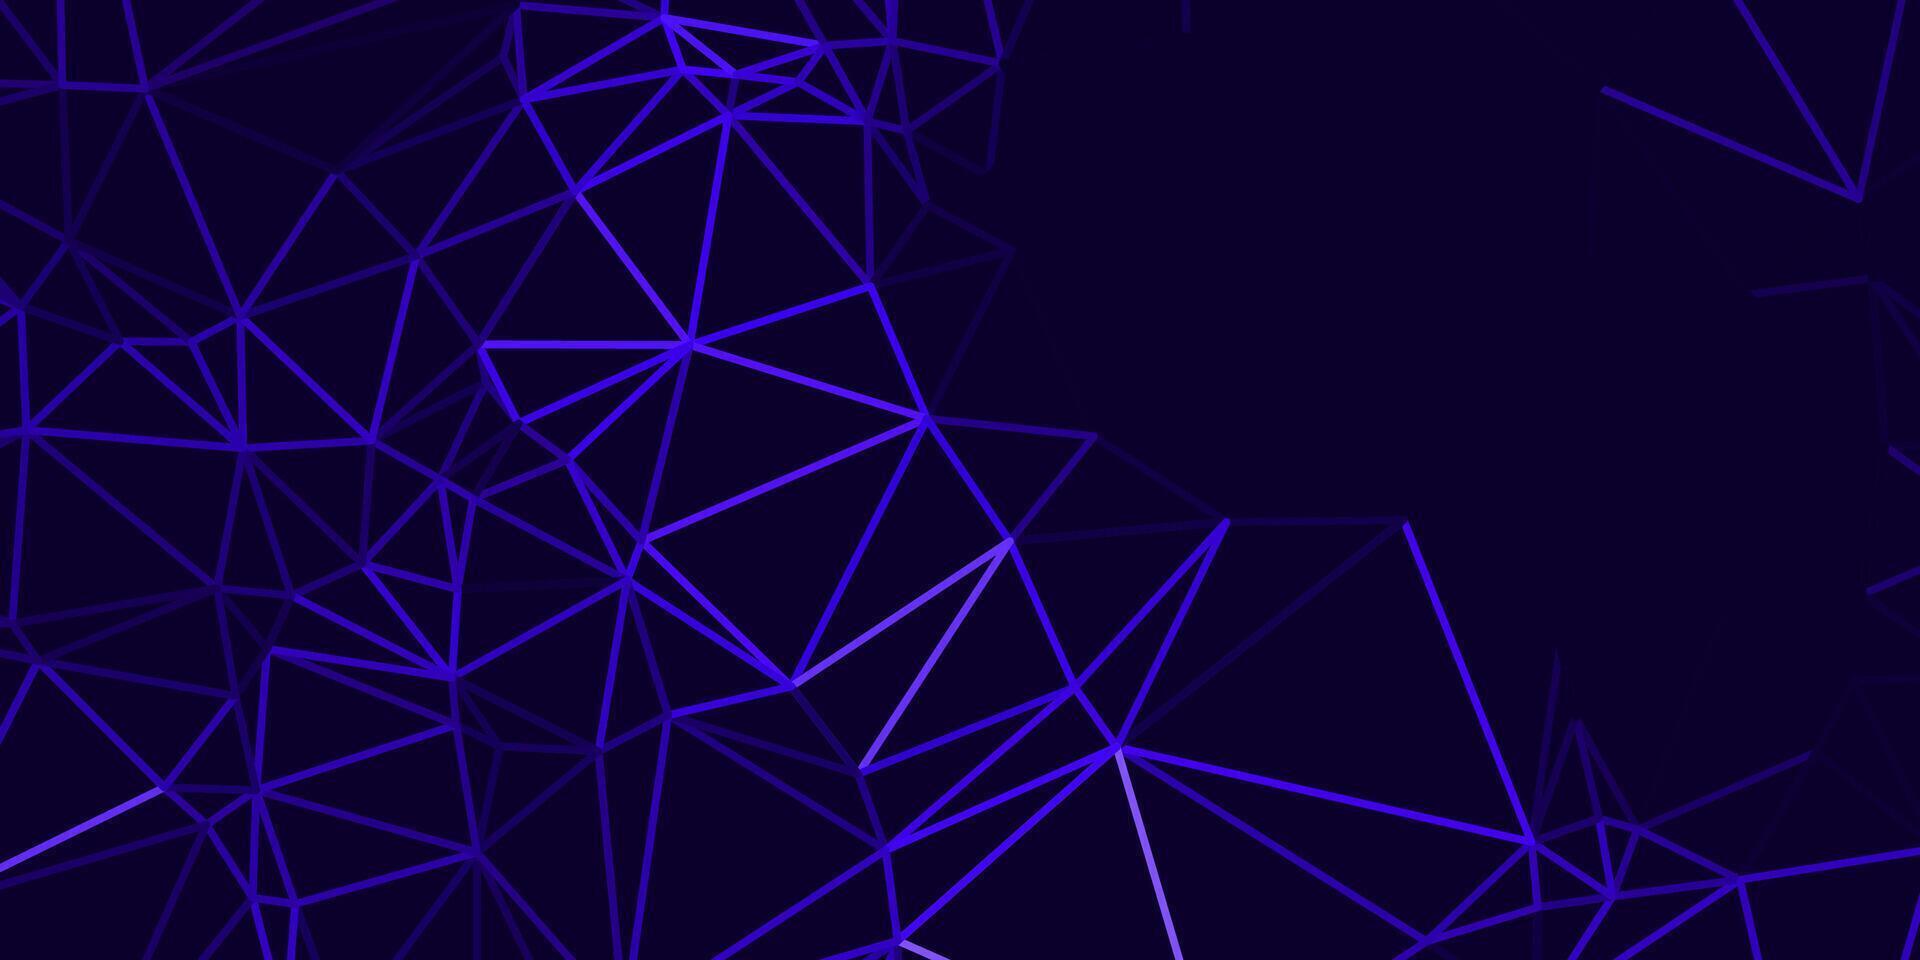 abstrato Sombrio azul fundo com triângulos e brilhando linhas vetor